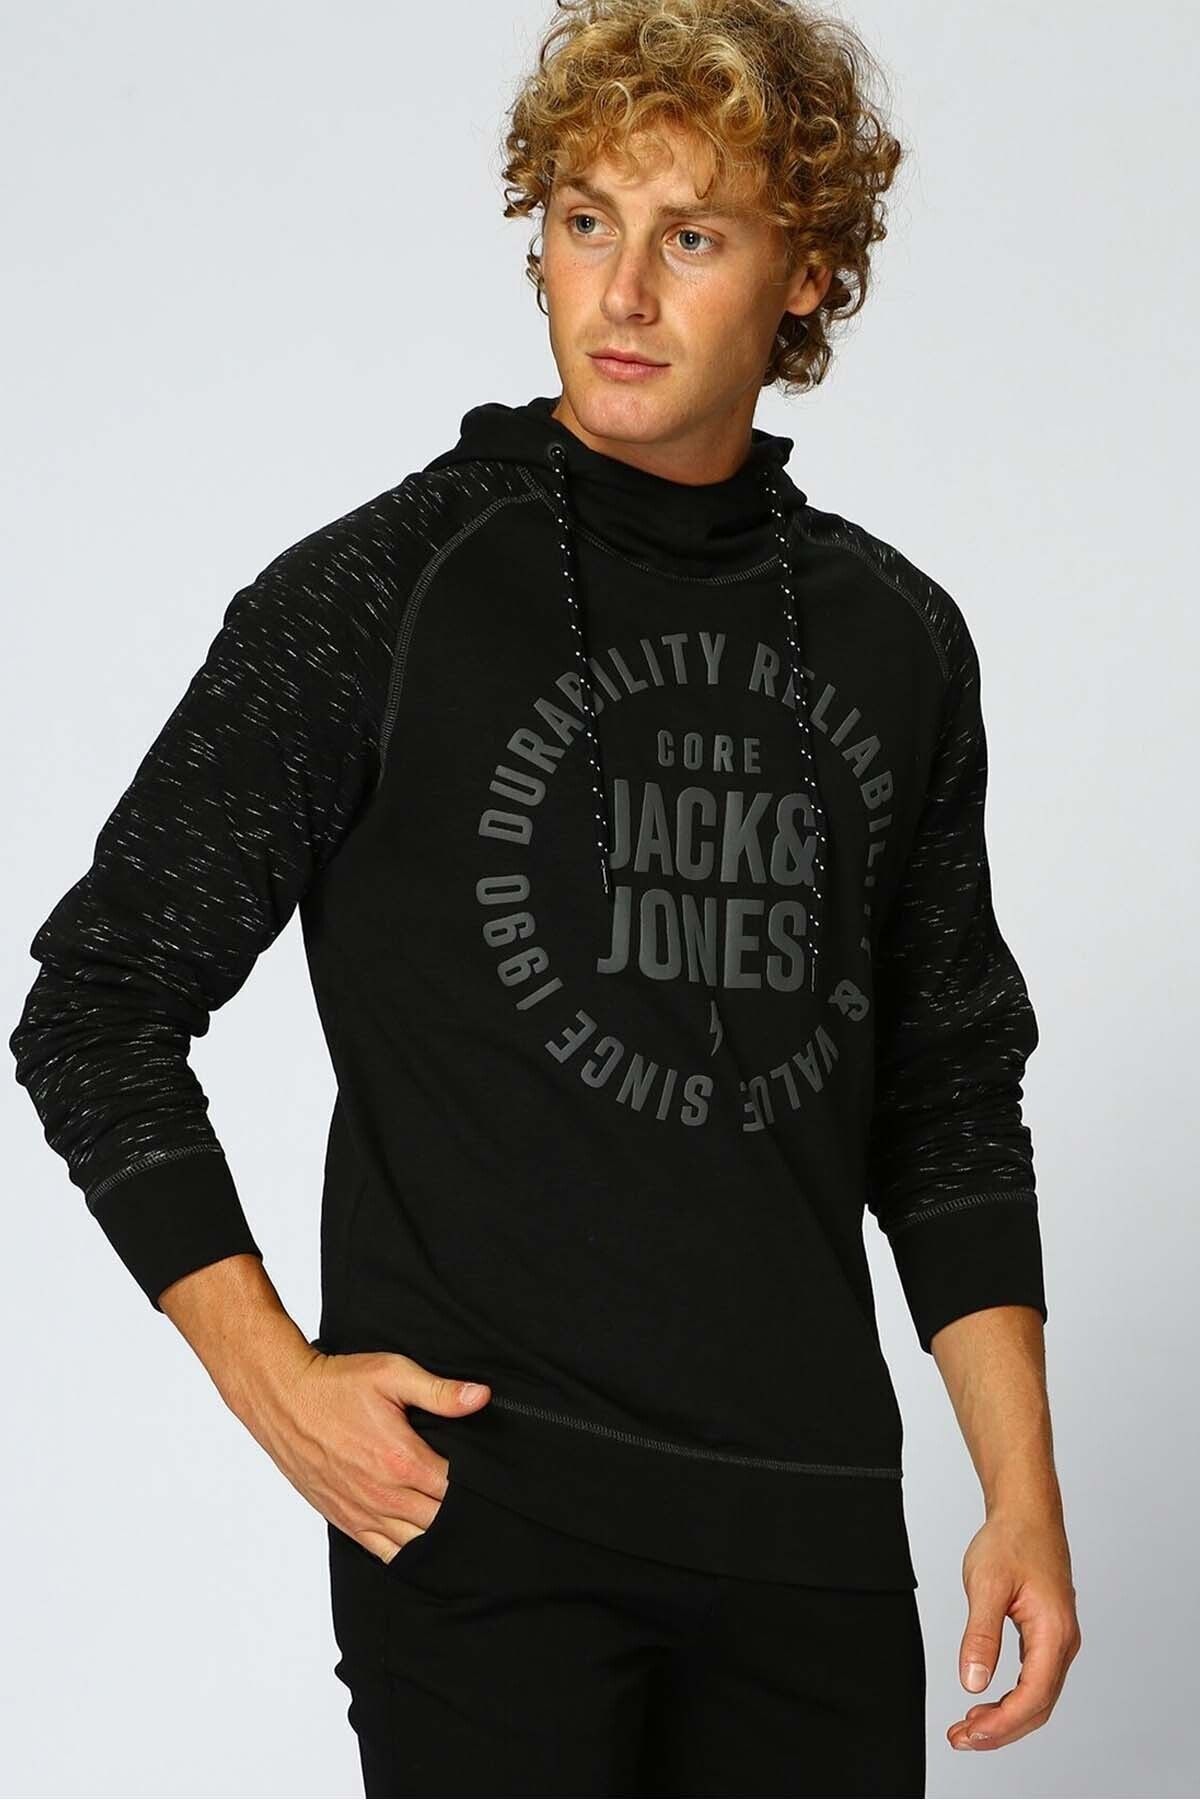 Jack & Jones Erkek Siyah Bagcıklı Kapsonlu Sınce 1990 Durabılıty Relıabılıty & Value Baskılı Sweatshirt 12143114